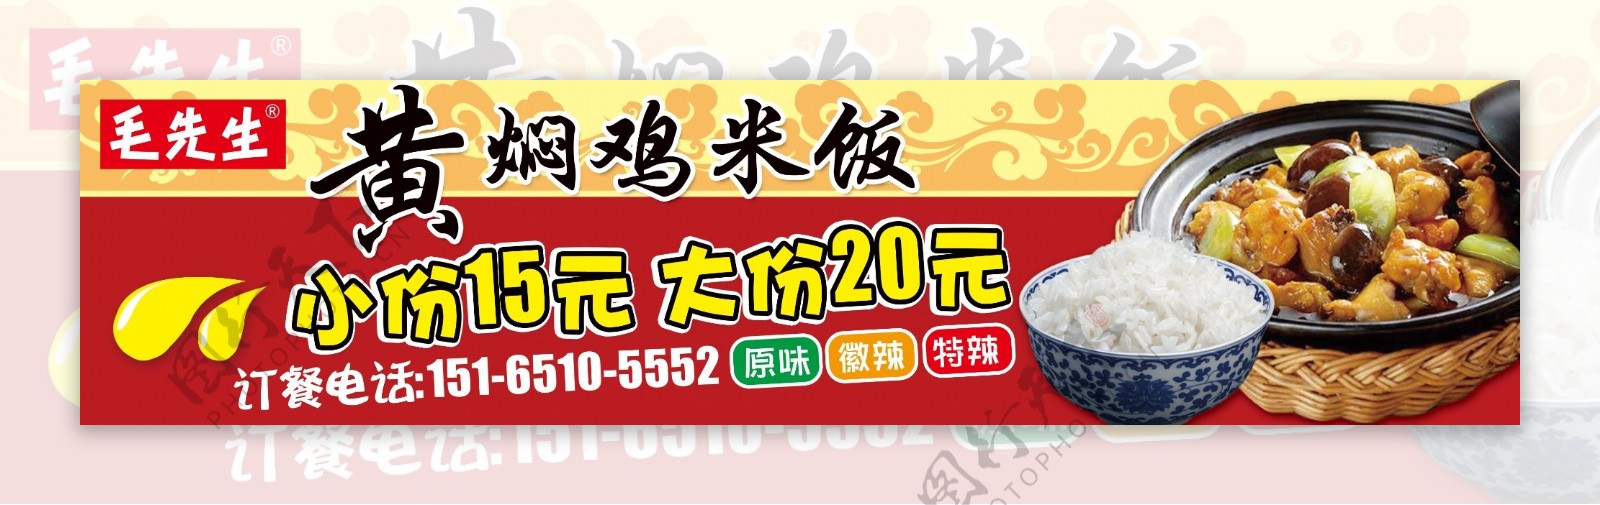 黄焖鸡米饭海报价格表